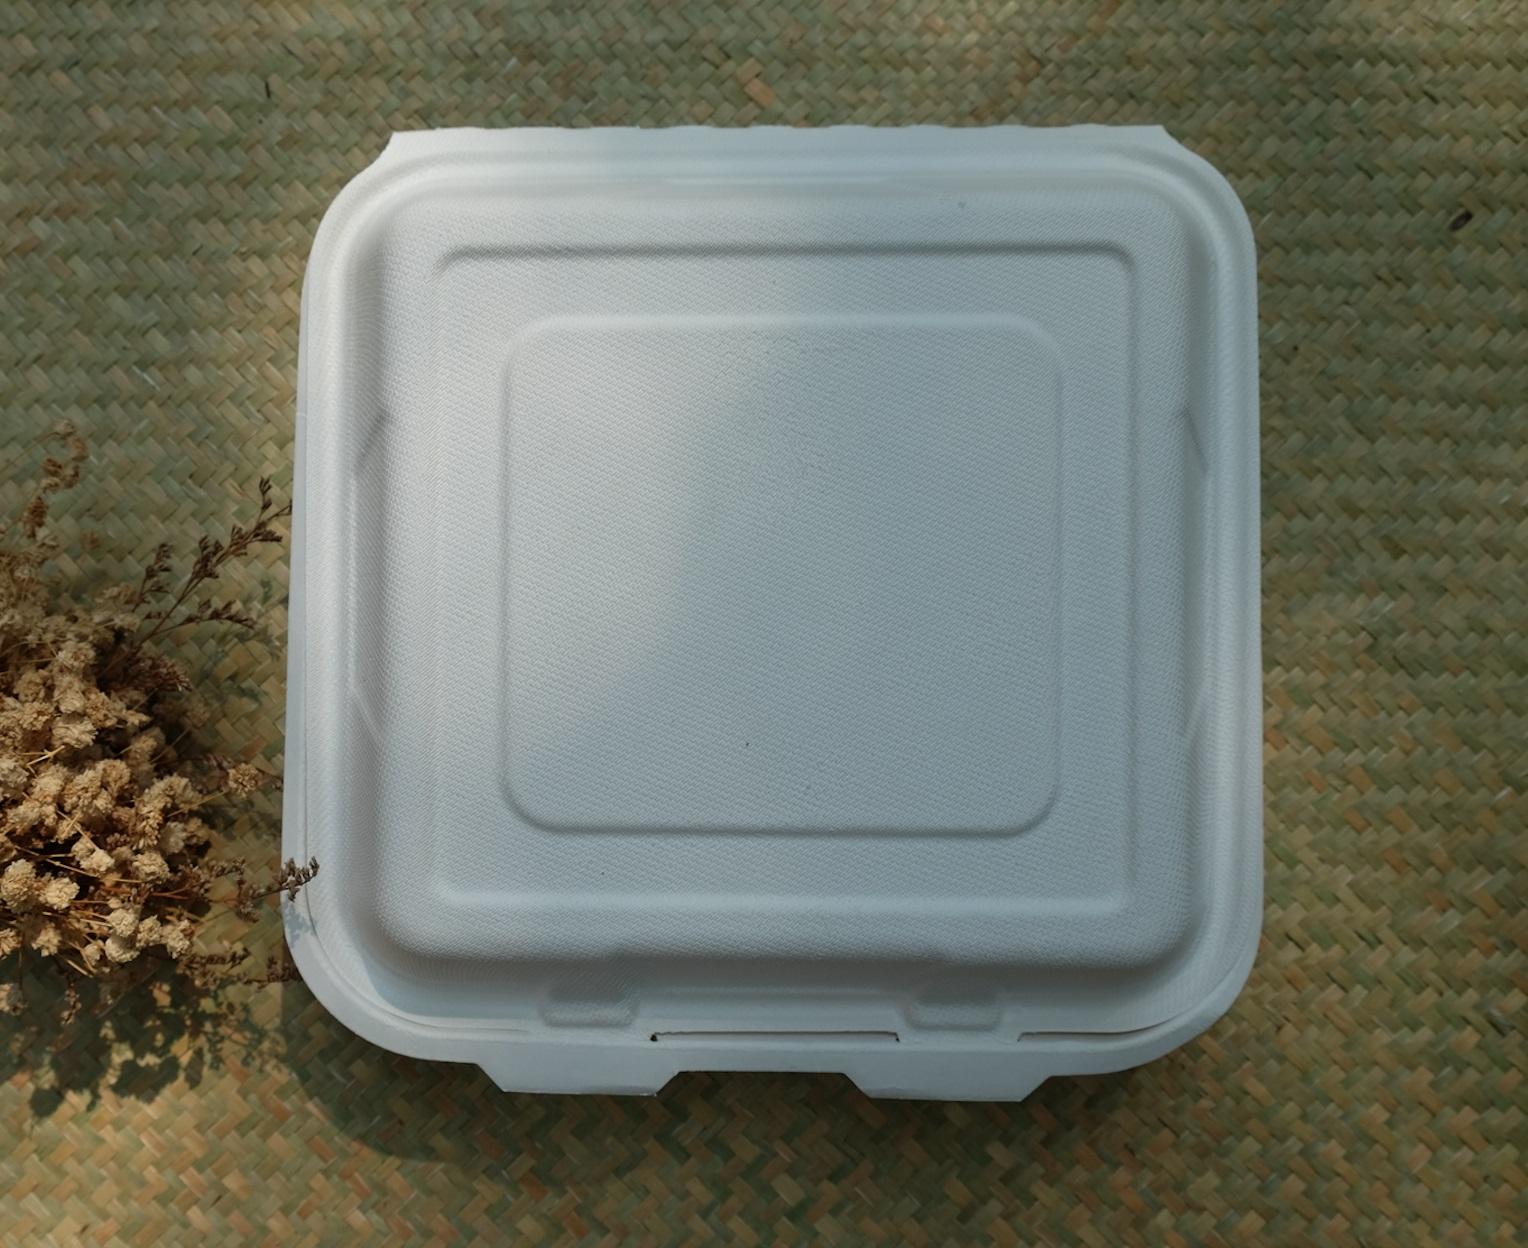 Organikhouse Lốc 50 Hộp đựng thức ăn dùng một lần từ chất liệu phân huỷ sinh học hiệu Gracz cỡ lớn_9inch (47x23.8x3.7 cm)